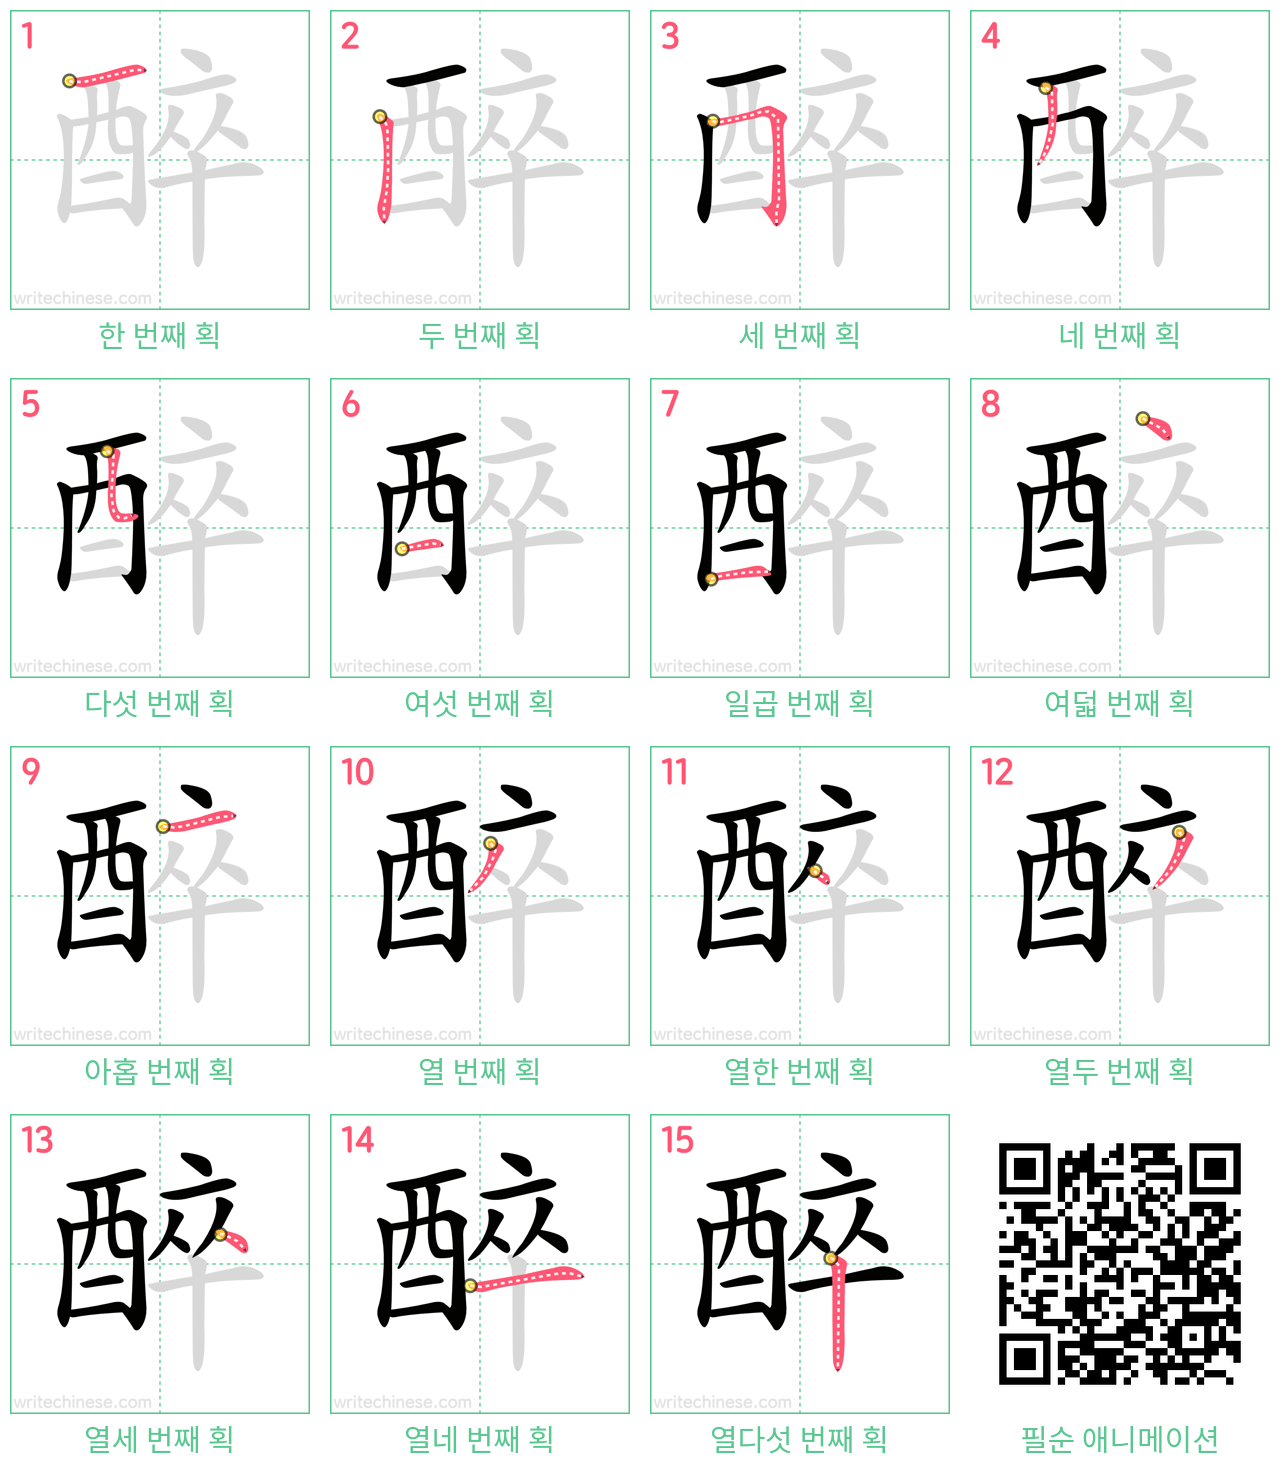 醉 step-by-step stroke order diagrams